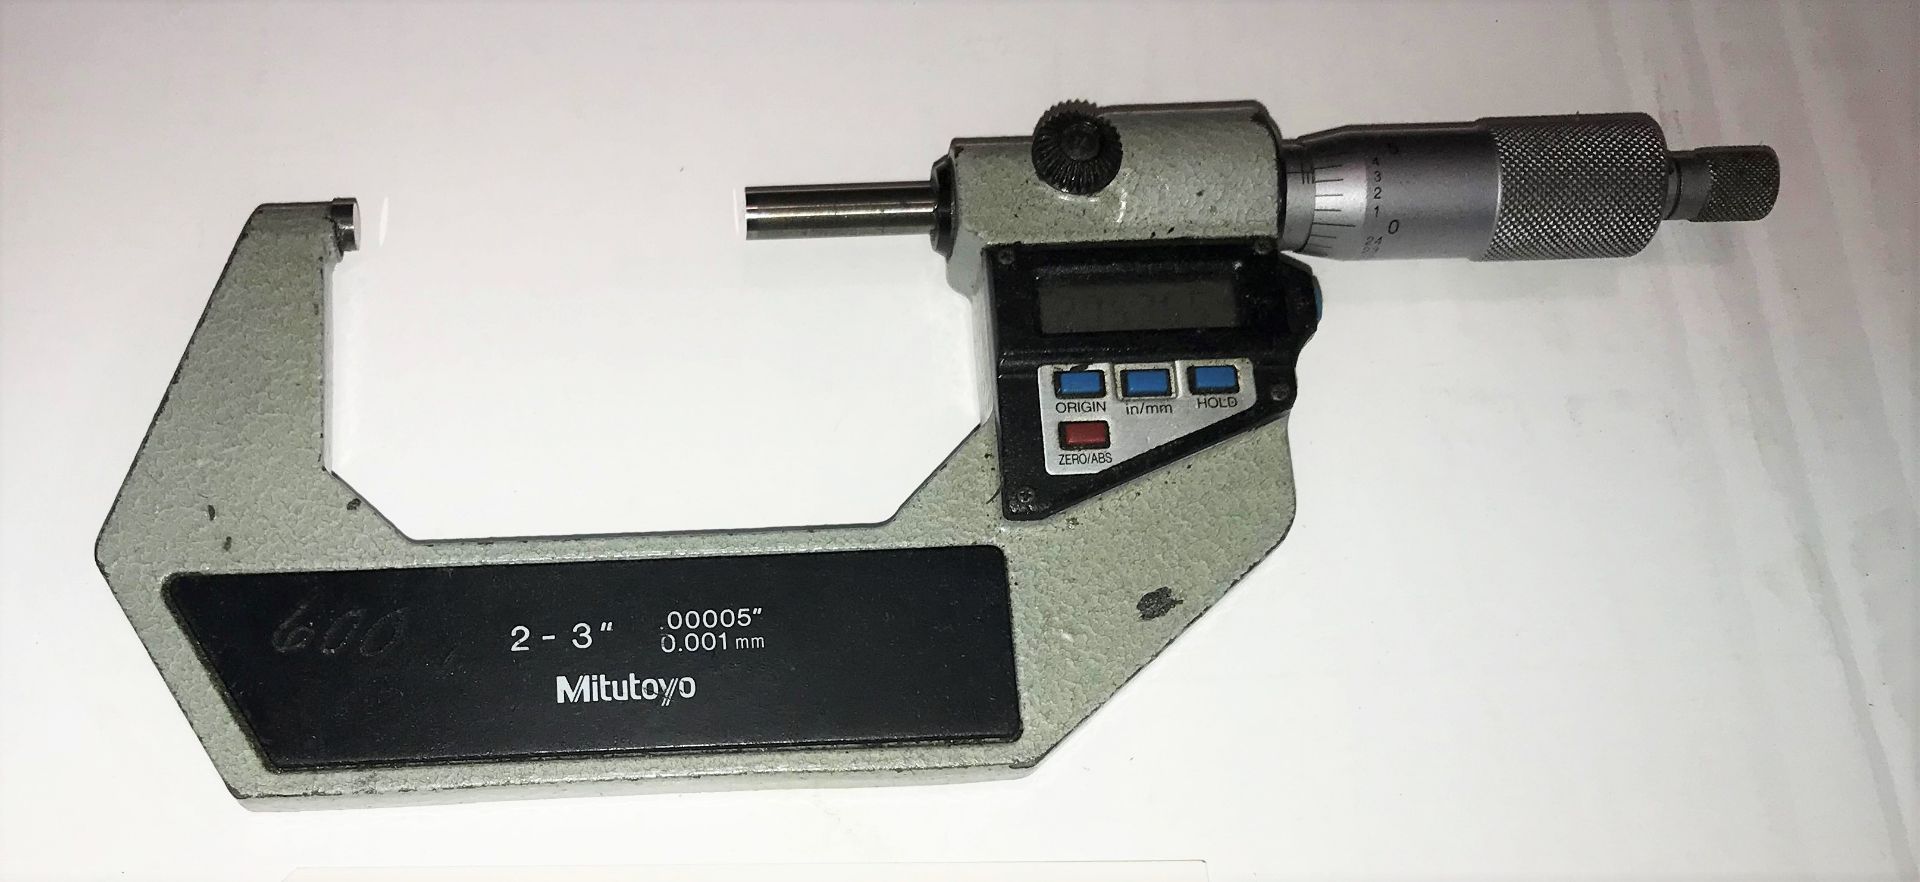 Mitutoyo 2"- 3" Digital Micrometer